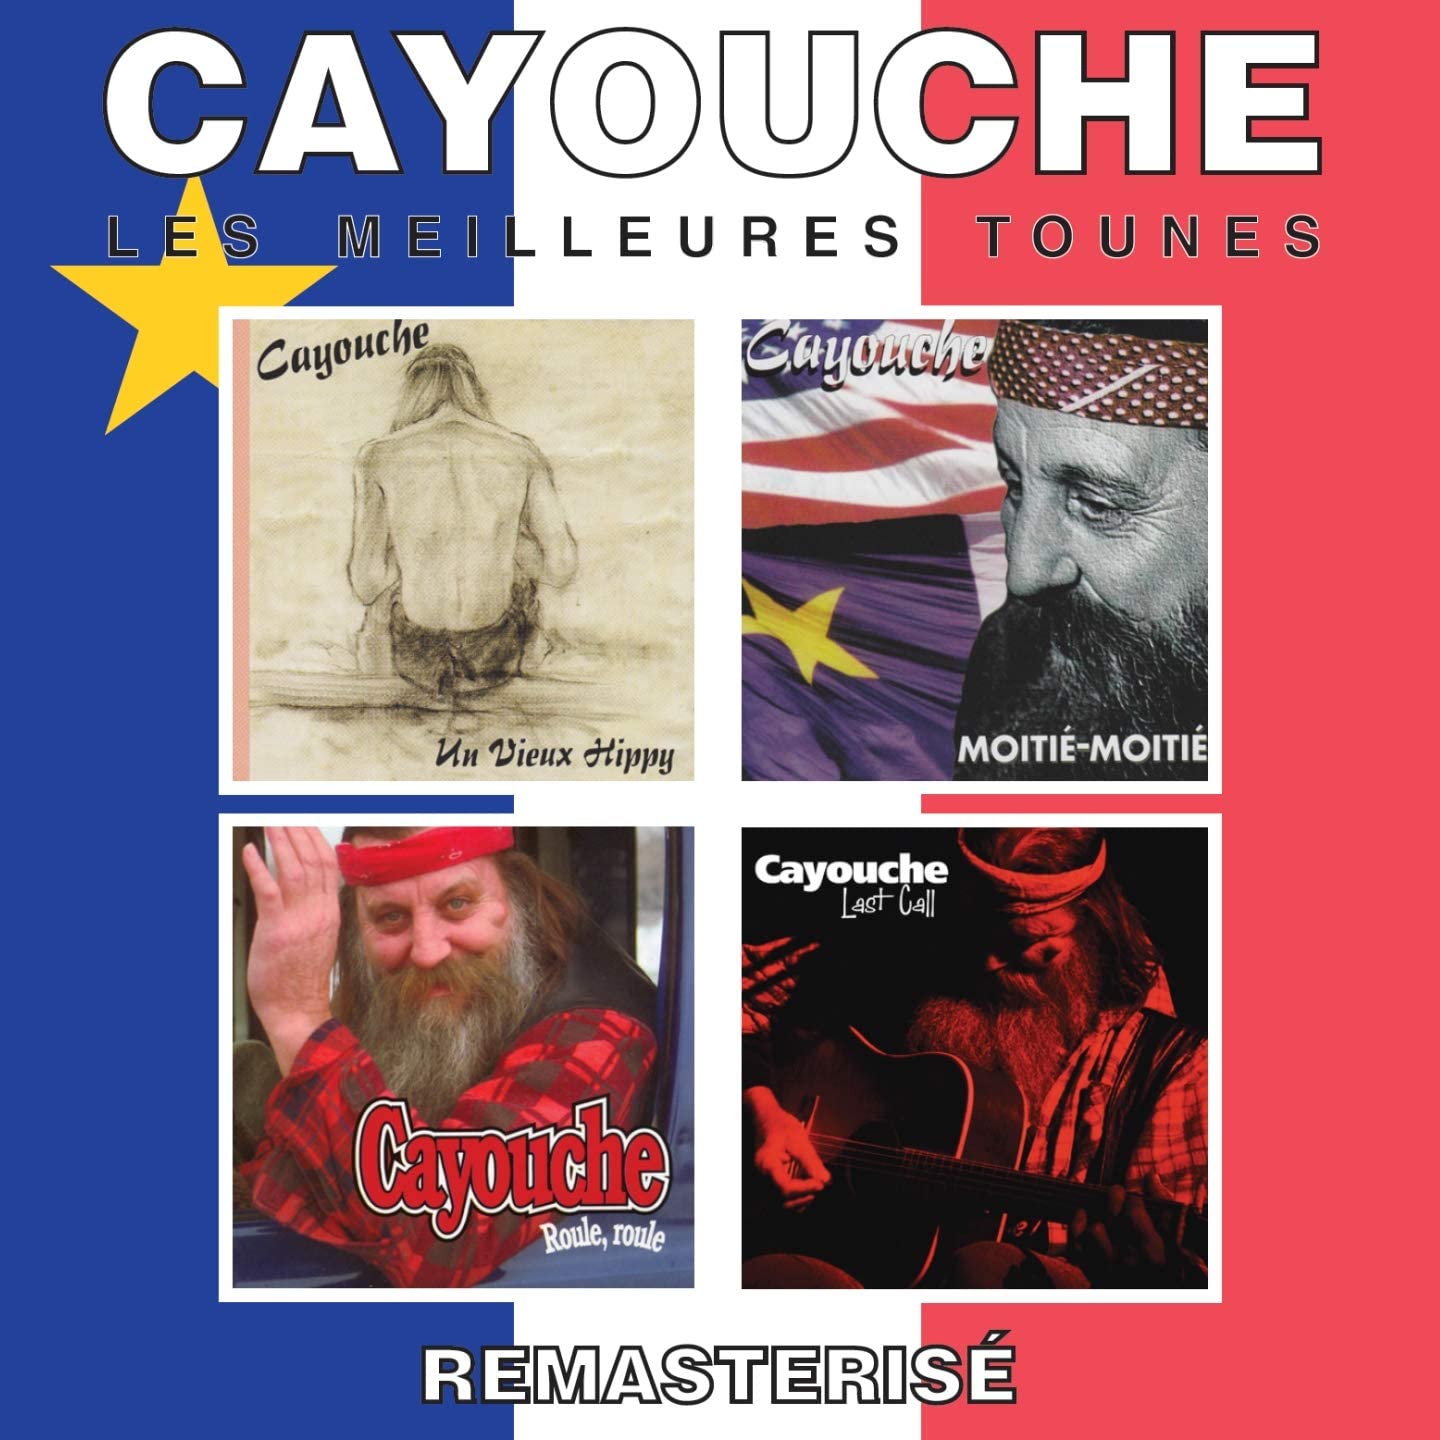 Les meilleurs tounes [Audio CD] Cayouche